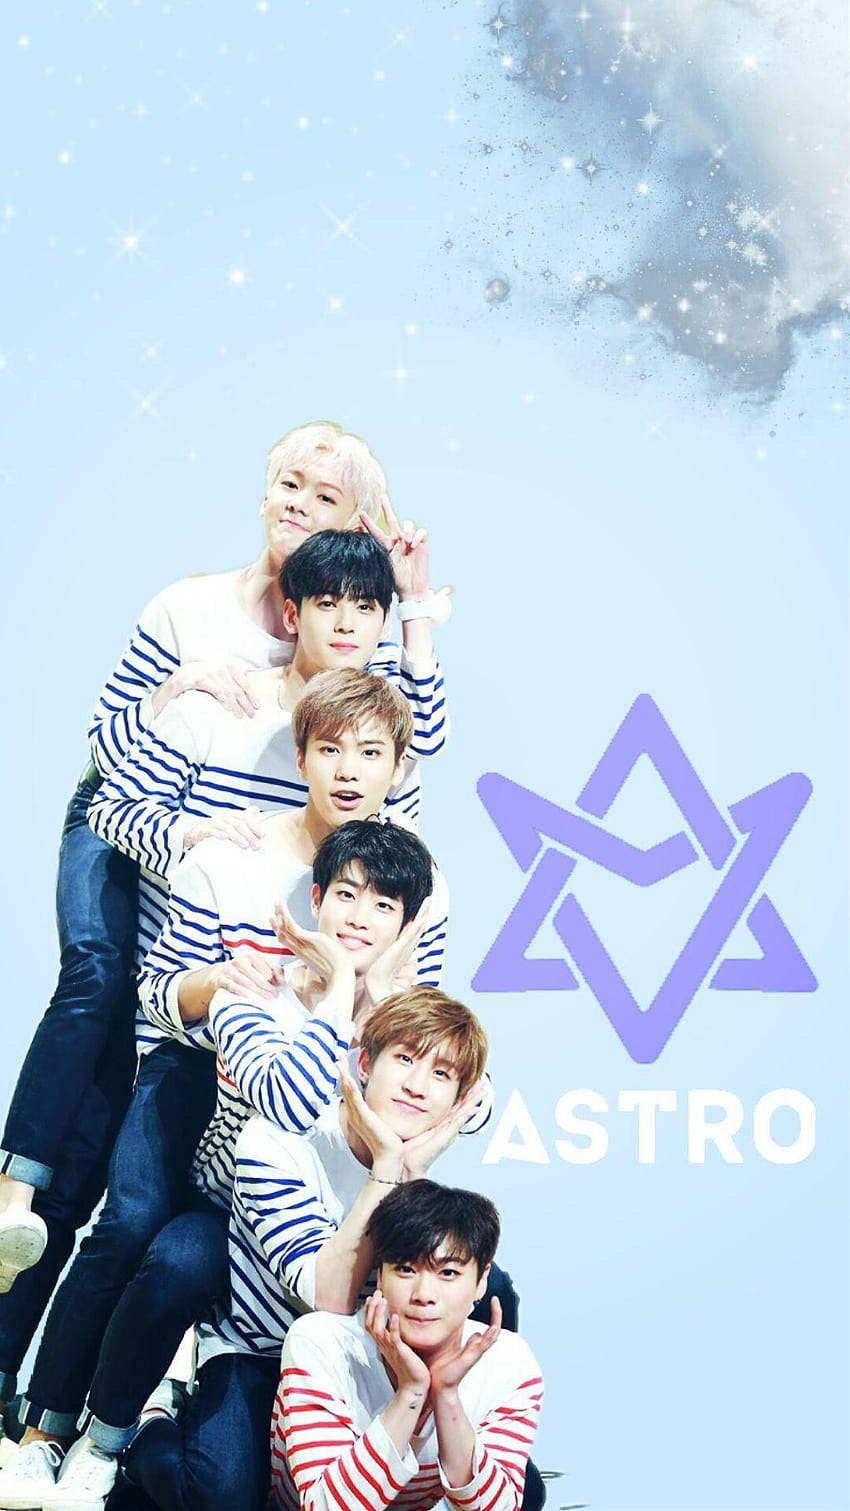 astro astrokpop kpop moonbin moonbinastro jin, astro k pop HD phone wallpaper